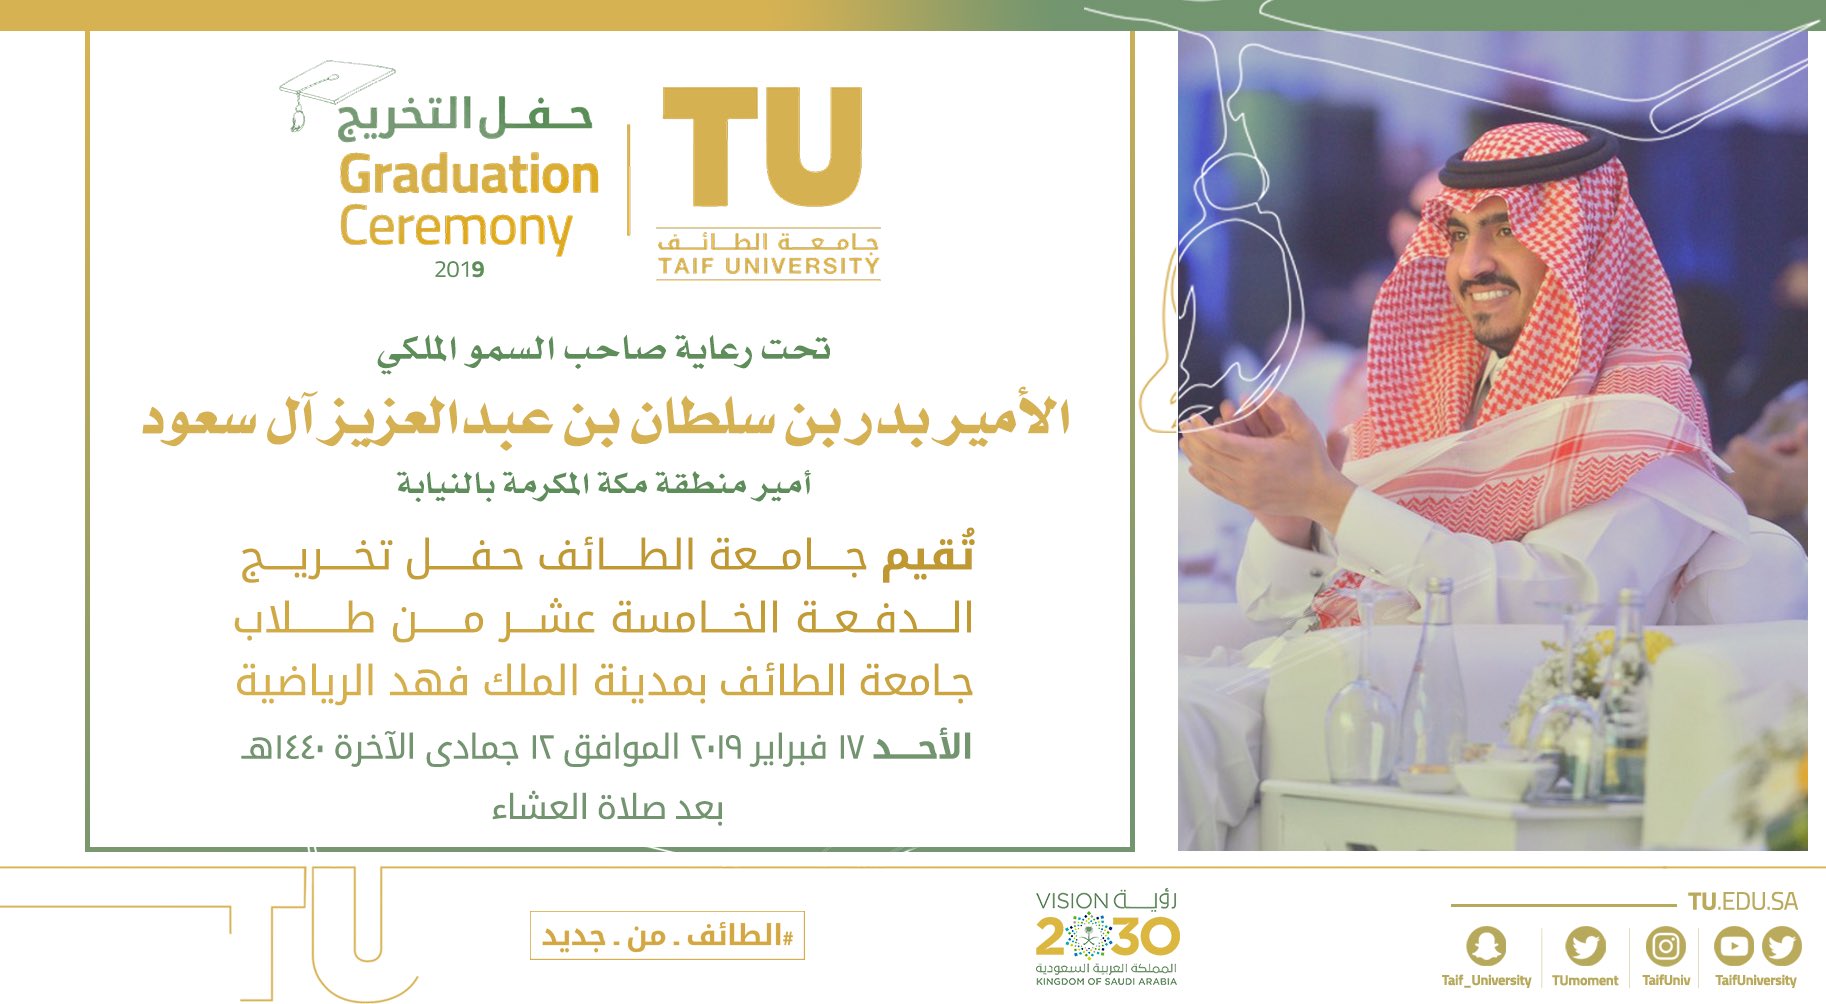  حفل تخريج الدفعة ١٥ بجامعة الطائف